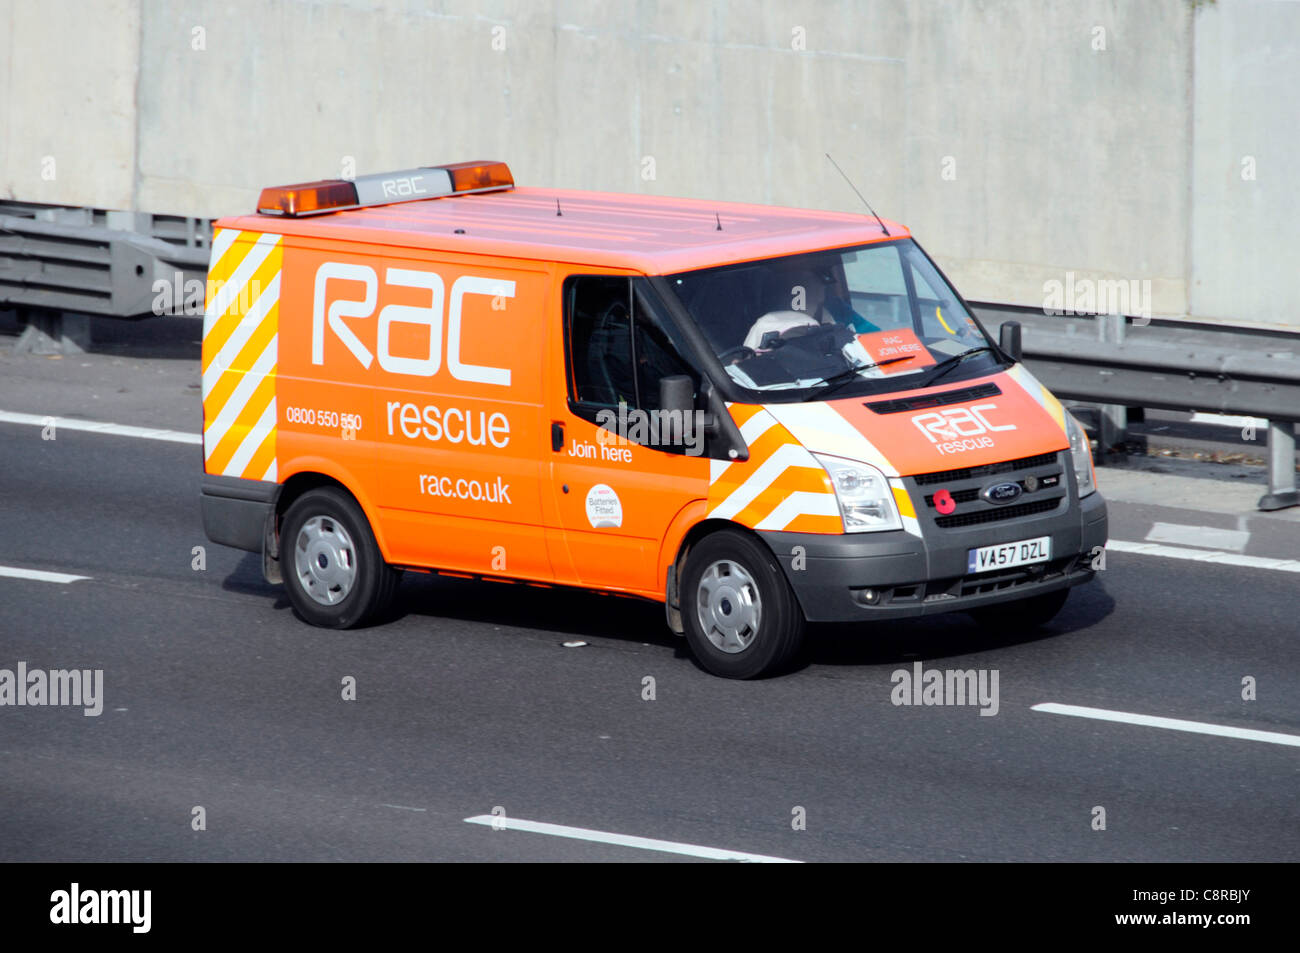 La société de services automobile RAC sauvetage ventilation van affichage pavot du souvenir en voiture sur autoroute M25 Essex England UK Banque D'Images